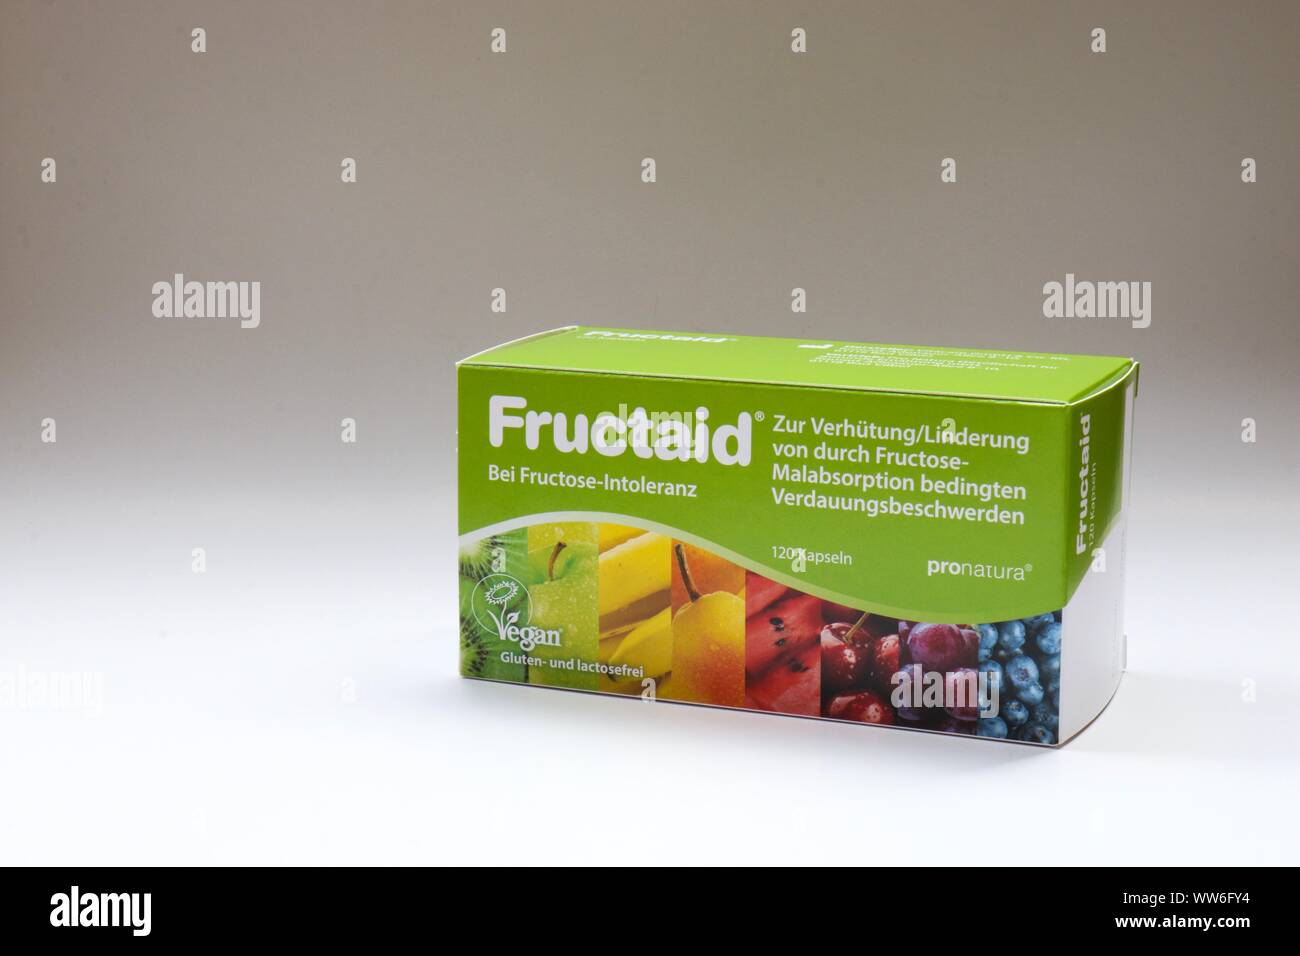 Berlino - Agosto 30, 2019: casella di Fructaid capsule. Una medicina che aiuta le persone con intolleranza al fruttosio / Malabsortion a digerire lo zucchero della frutta che ho Foto Stock